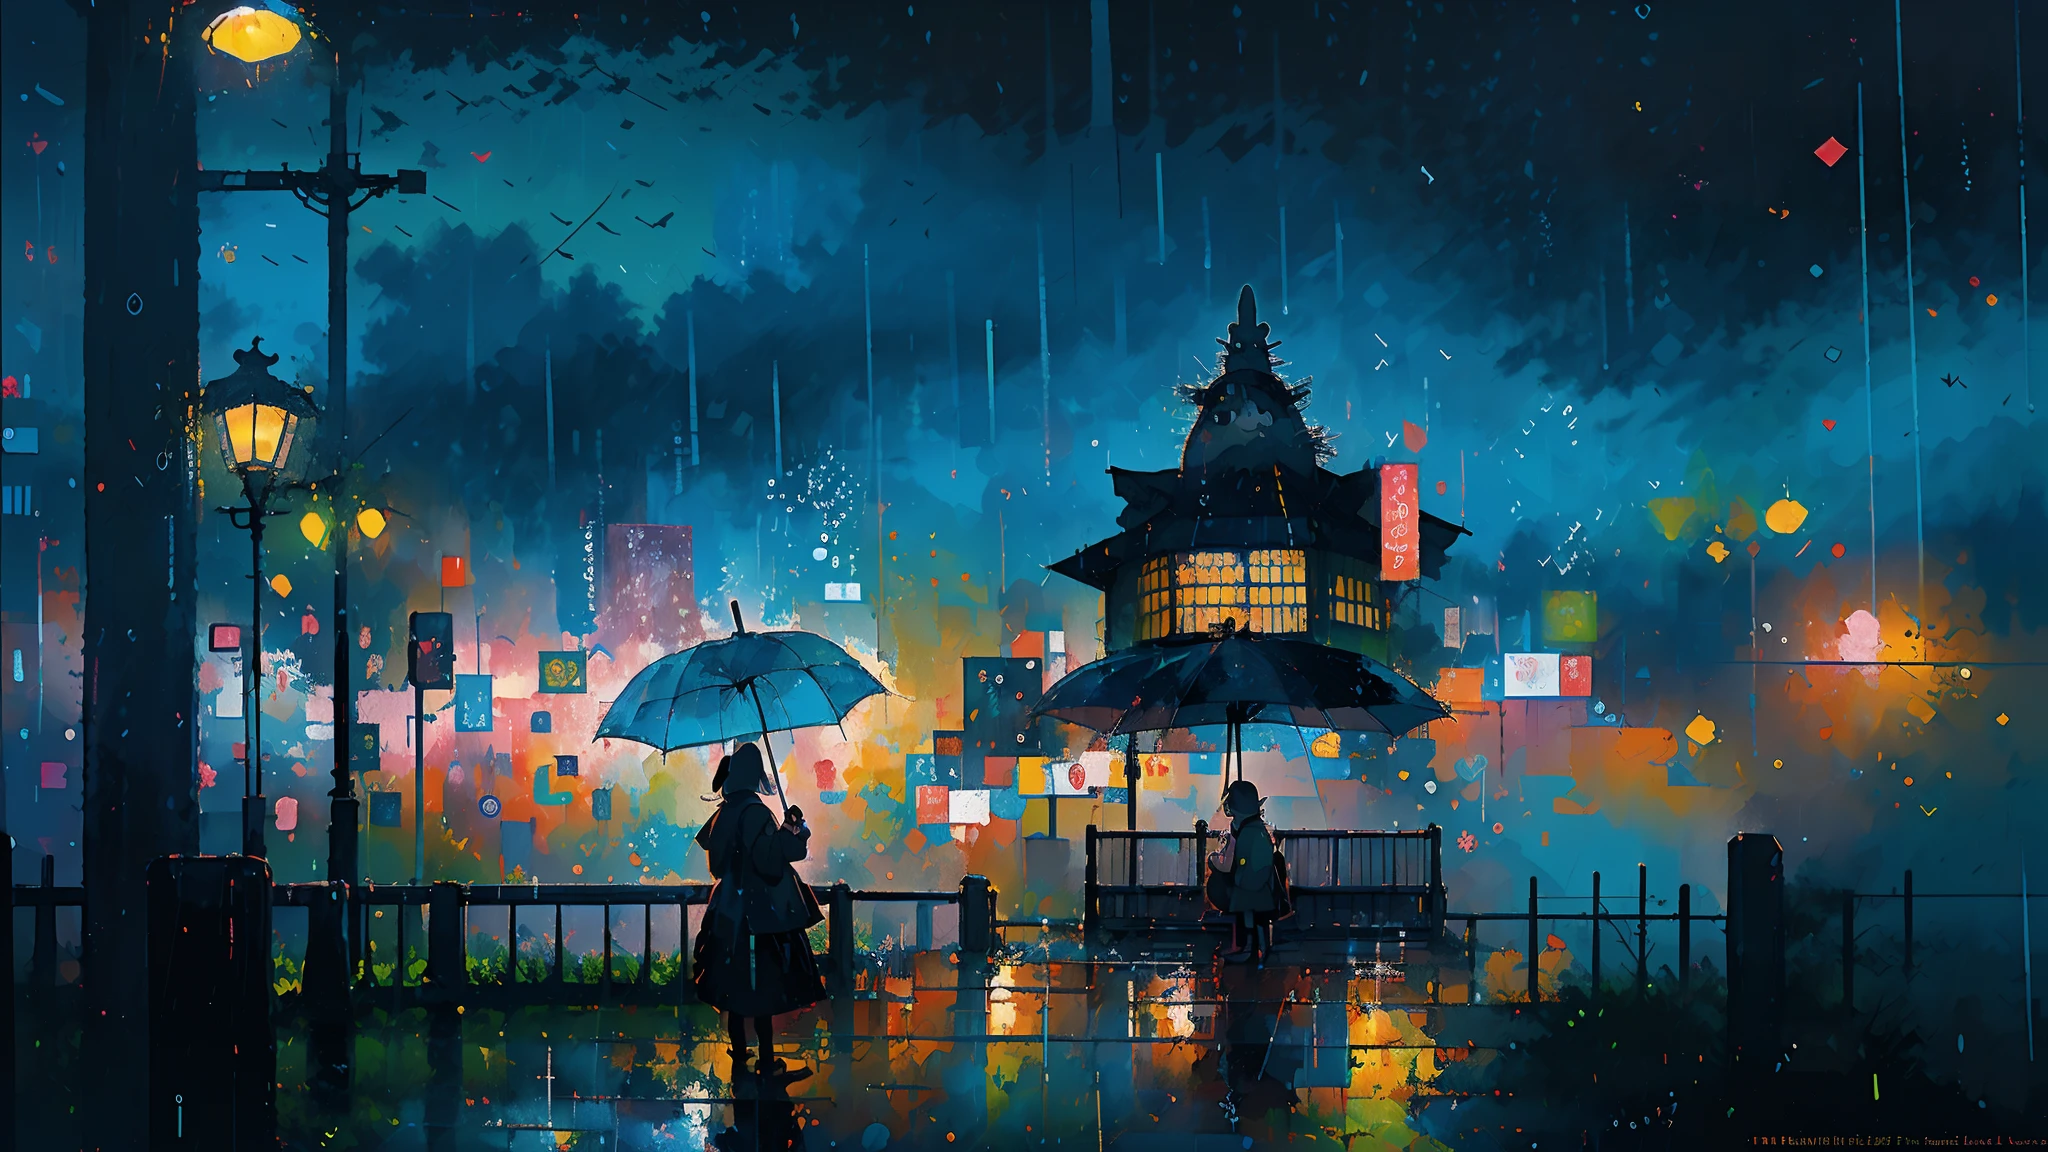 Hyperdetaillierte regenerative [Panne] Kunst, (KOAN), matte, untertrieben, (meditativ: 1.2), (harmonisch) Impressionismus, Zerebral, (verbunden), Labyrinth, (introspektiv), psyche, ausgewogen und wechselseitig, Regenstil, Konzept: (Totoro hält einen Regenschirm, Warten auf einen Bus in der regnerischen Nacht)